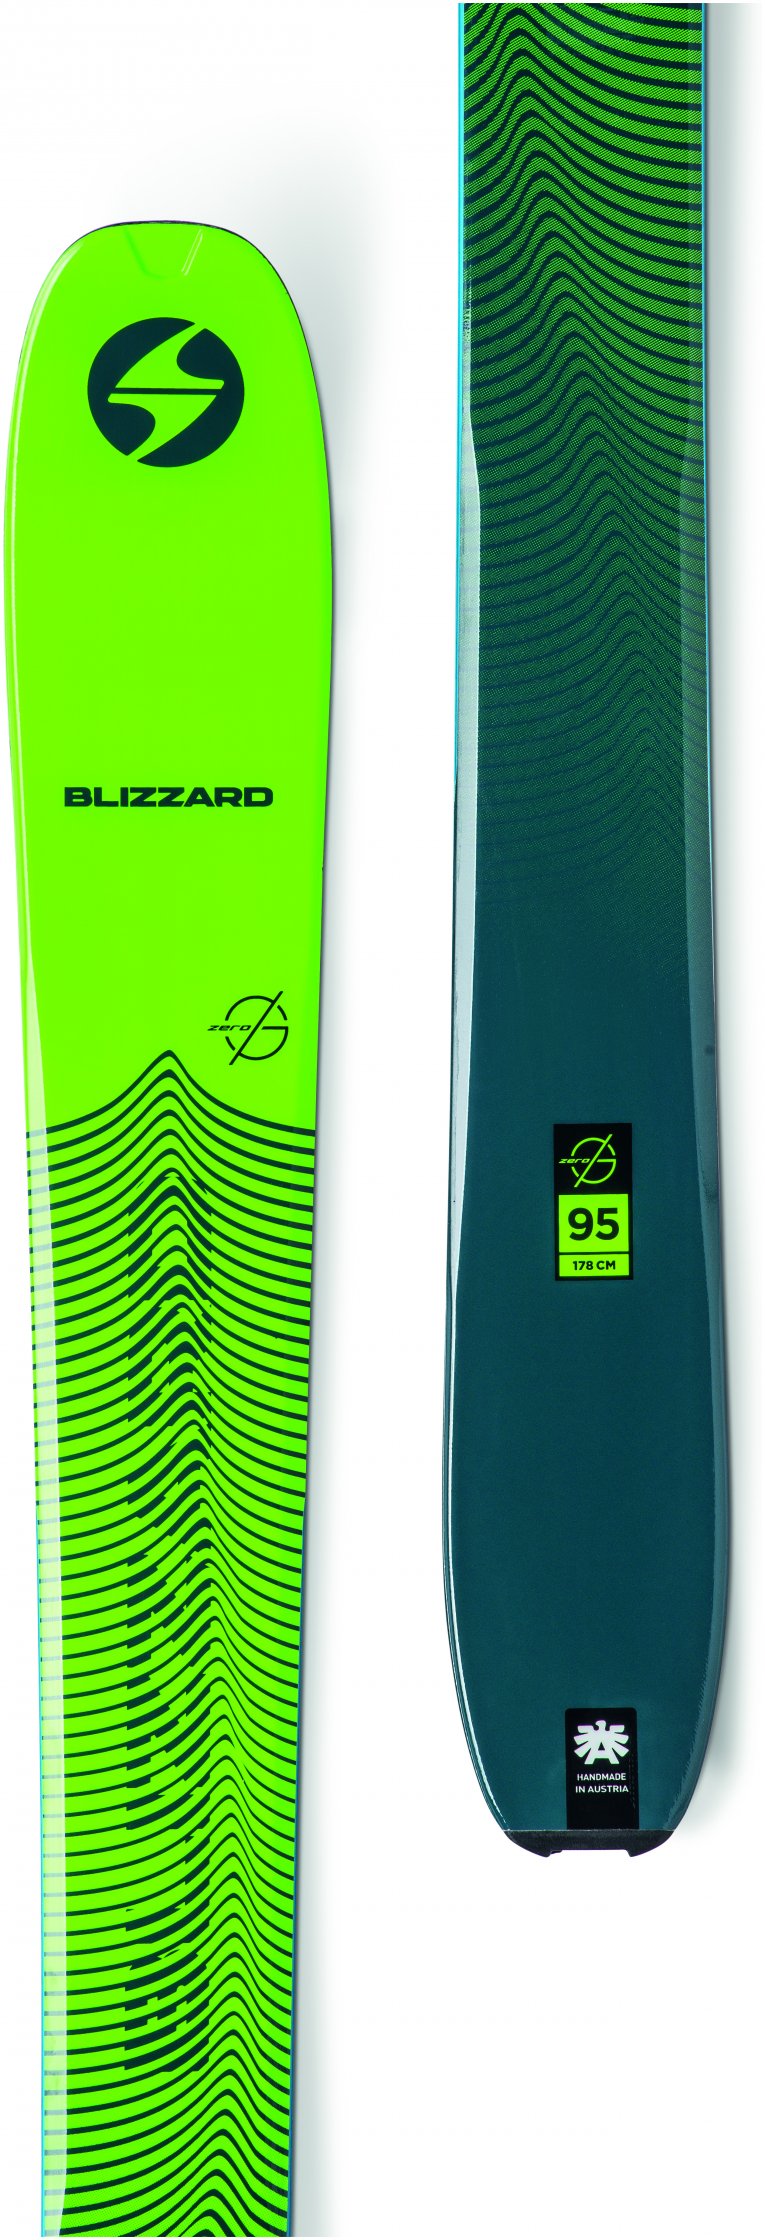 Blizzard Zero G 95 Ski